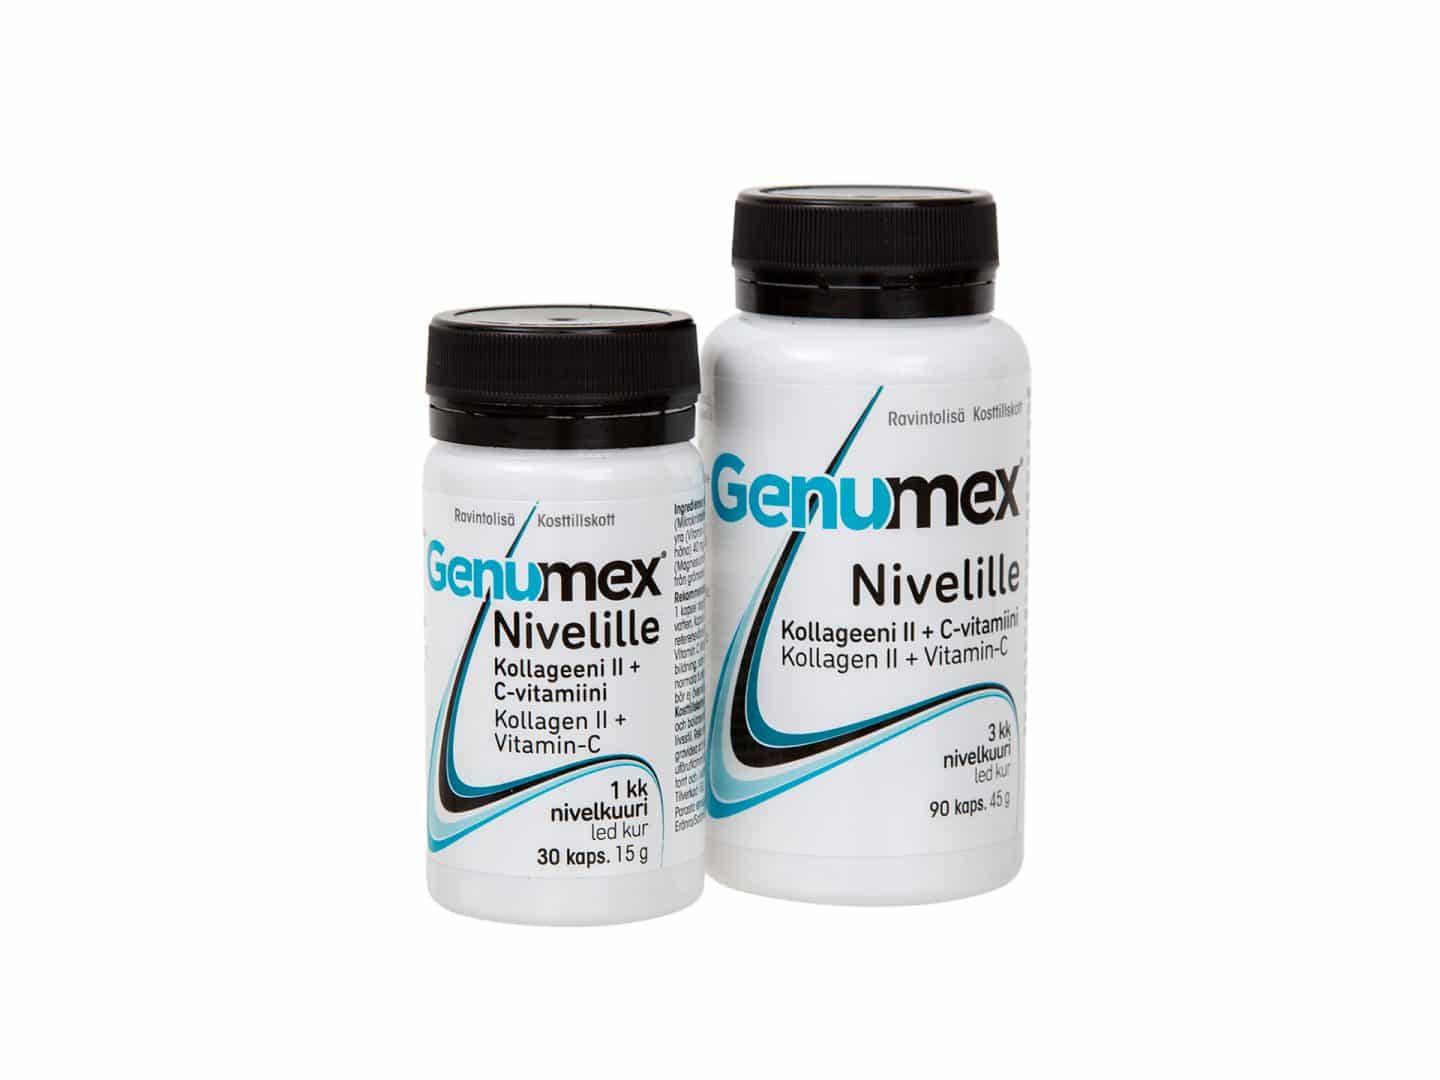 Genumex®ravintolisä nivelille tuotepakkaukset